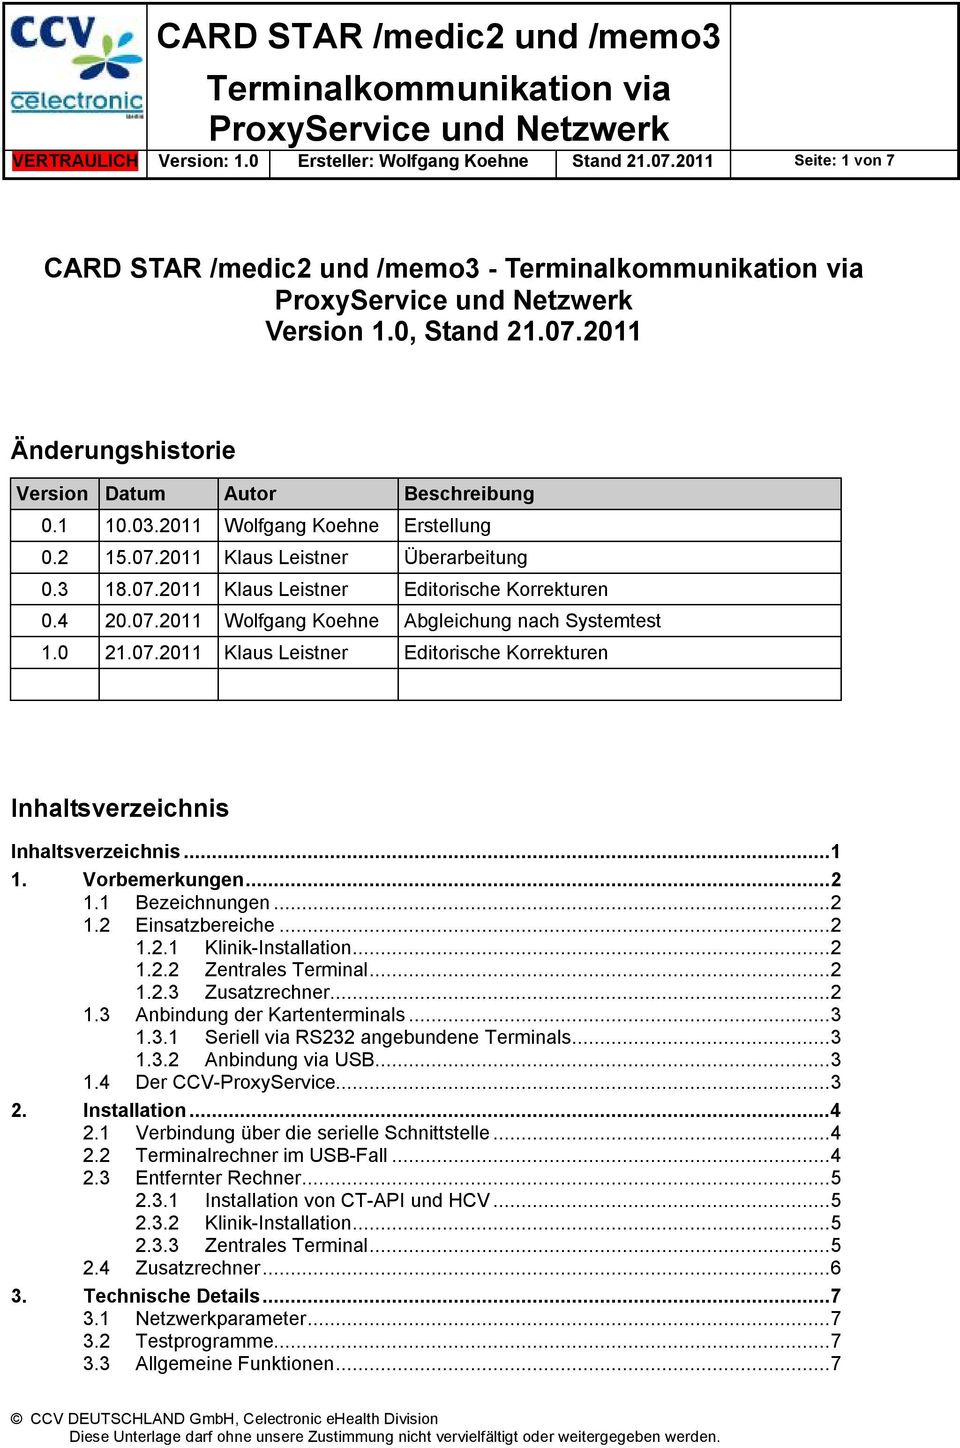 0 21.07.2011 Klaus Leistner Editorische Korrekturen Inhaltsverzeichnis Inhaltsverzeichnis...1 1. Vorbemerkungen...2 1.1 Bezeichnungen...2 1.2 Einsatzbereiche...2 1.2.1 Klinik-Installation...2 1.2.2 Zentrales Terminal.